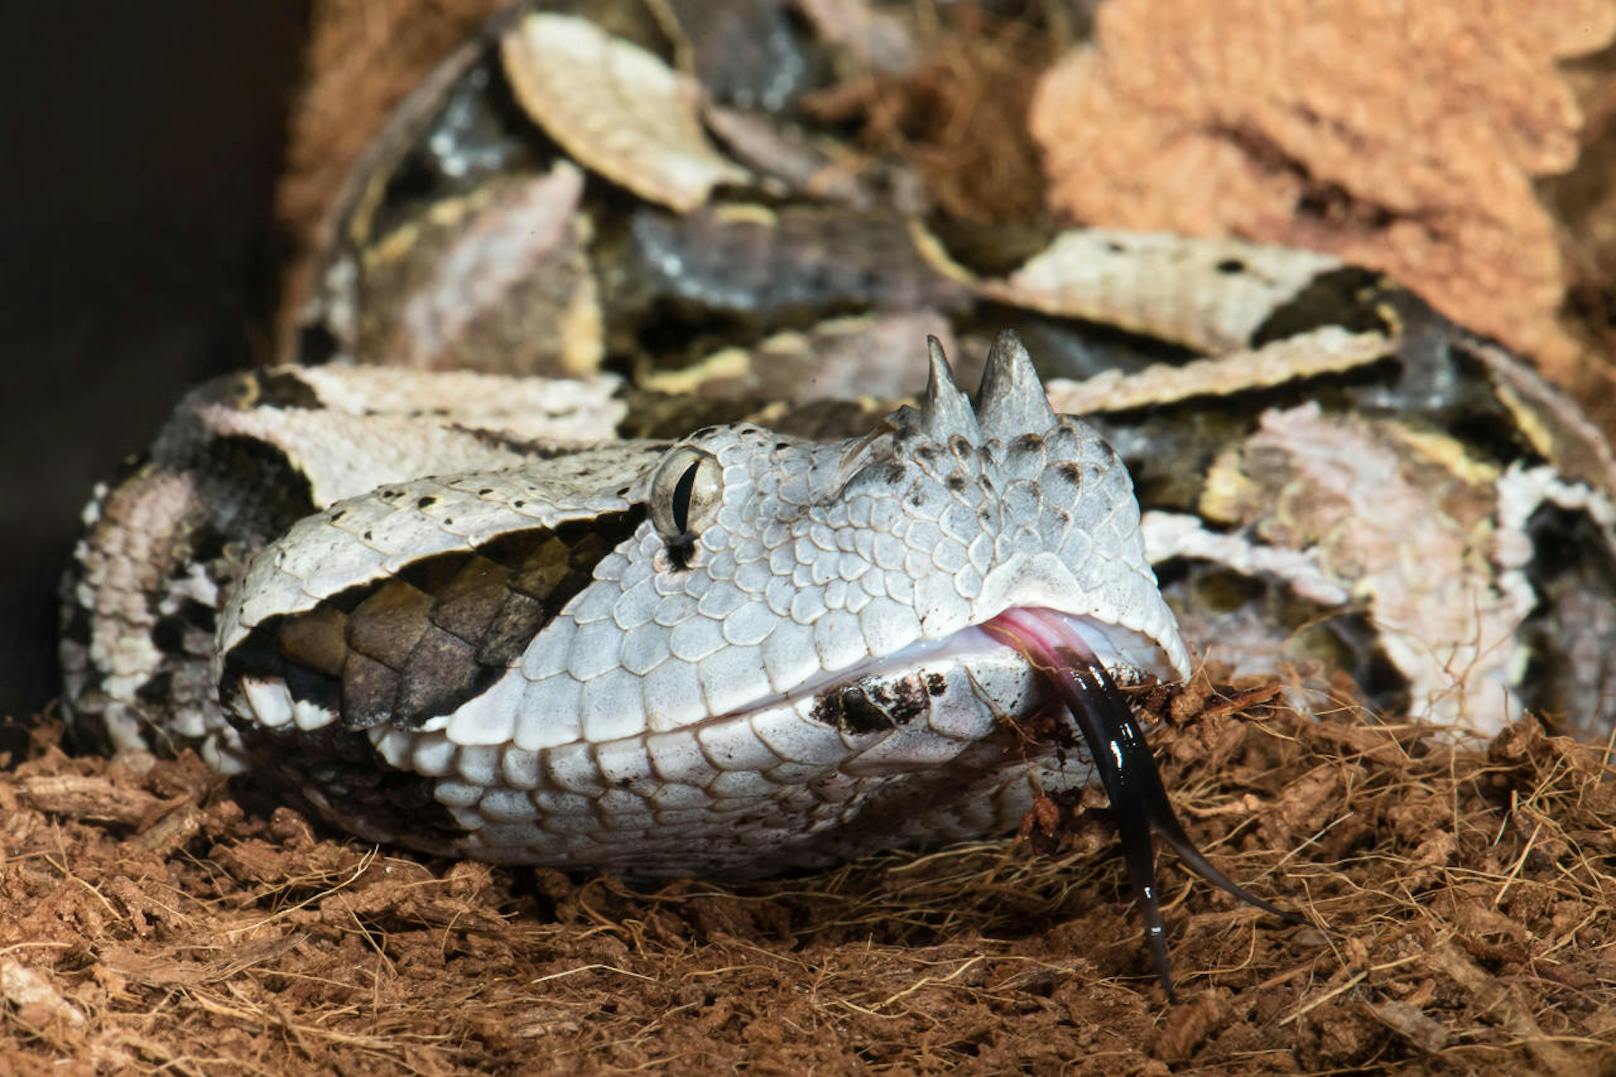 Die Hörner machen diese afrikanische Schlangenart noch furchteinflößender.